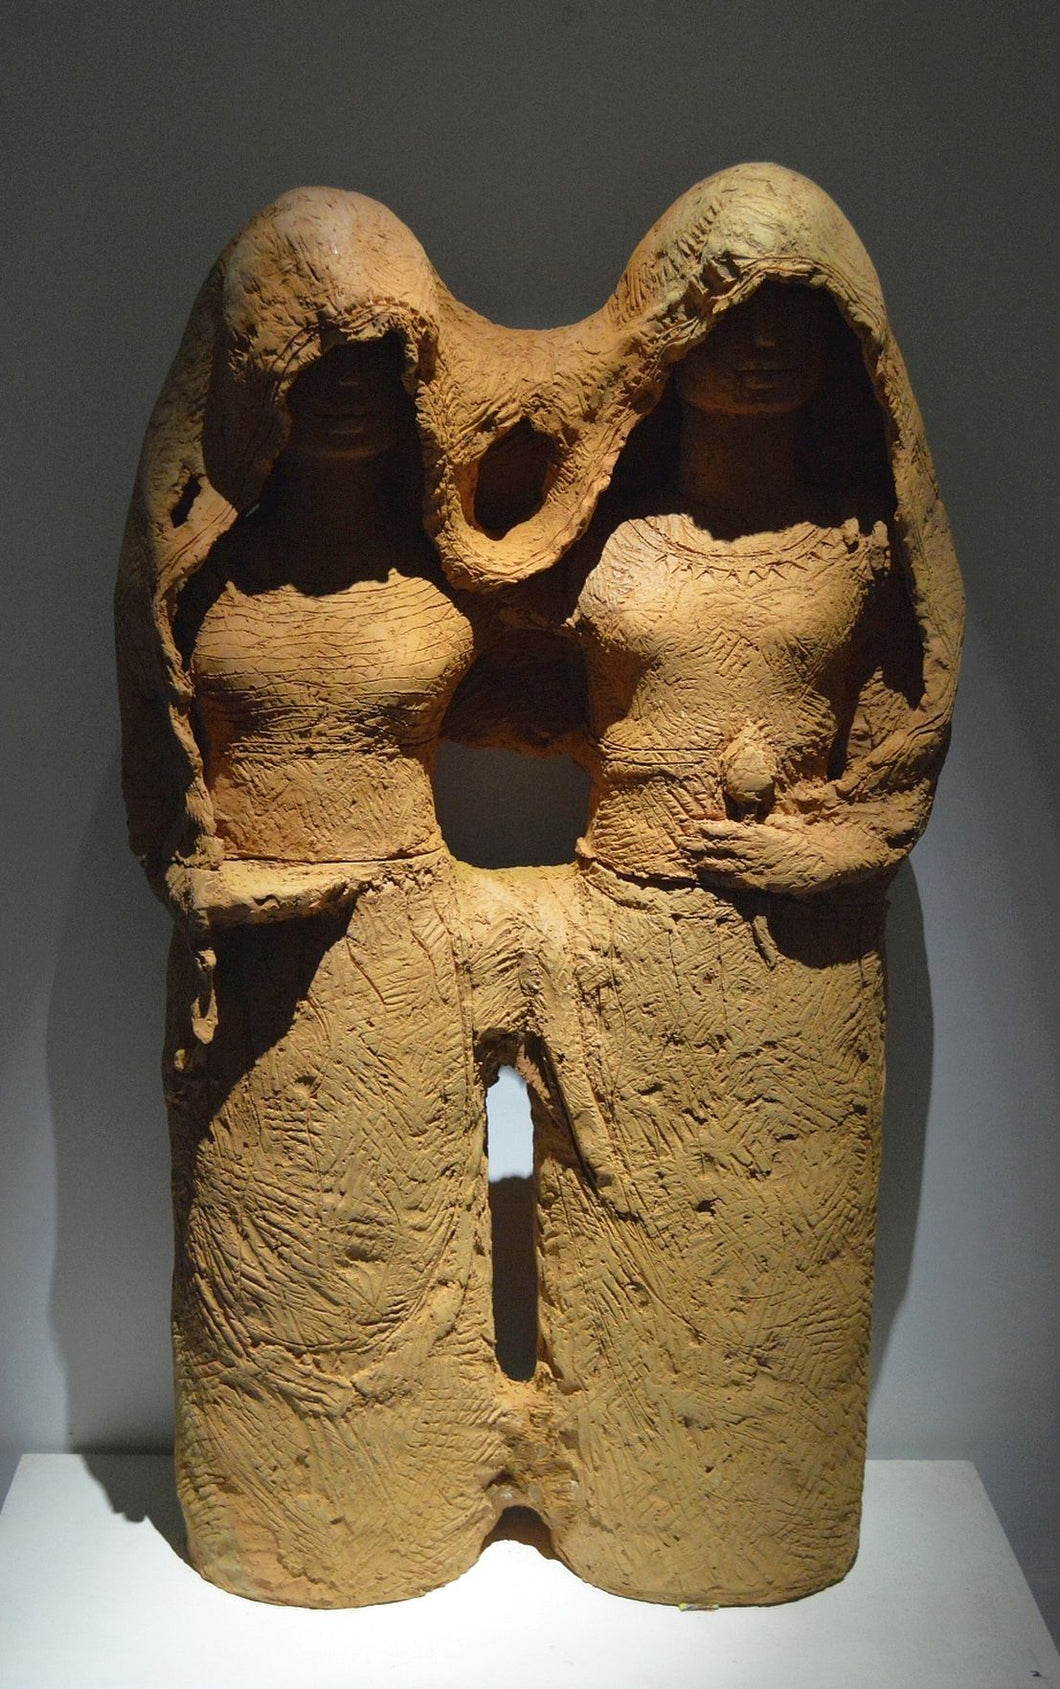 Two Veiled Dancers : Terracotta sculptures by RamKumar Manna